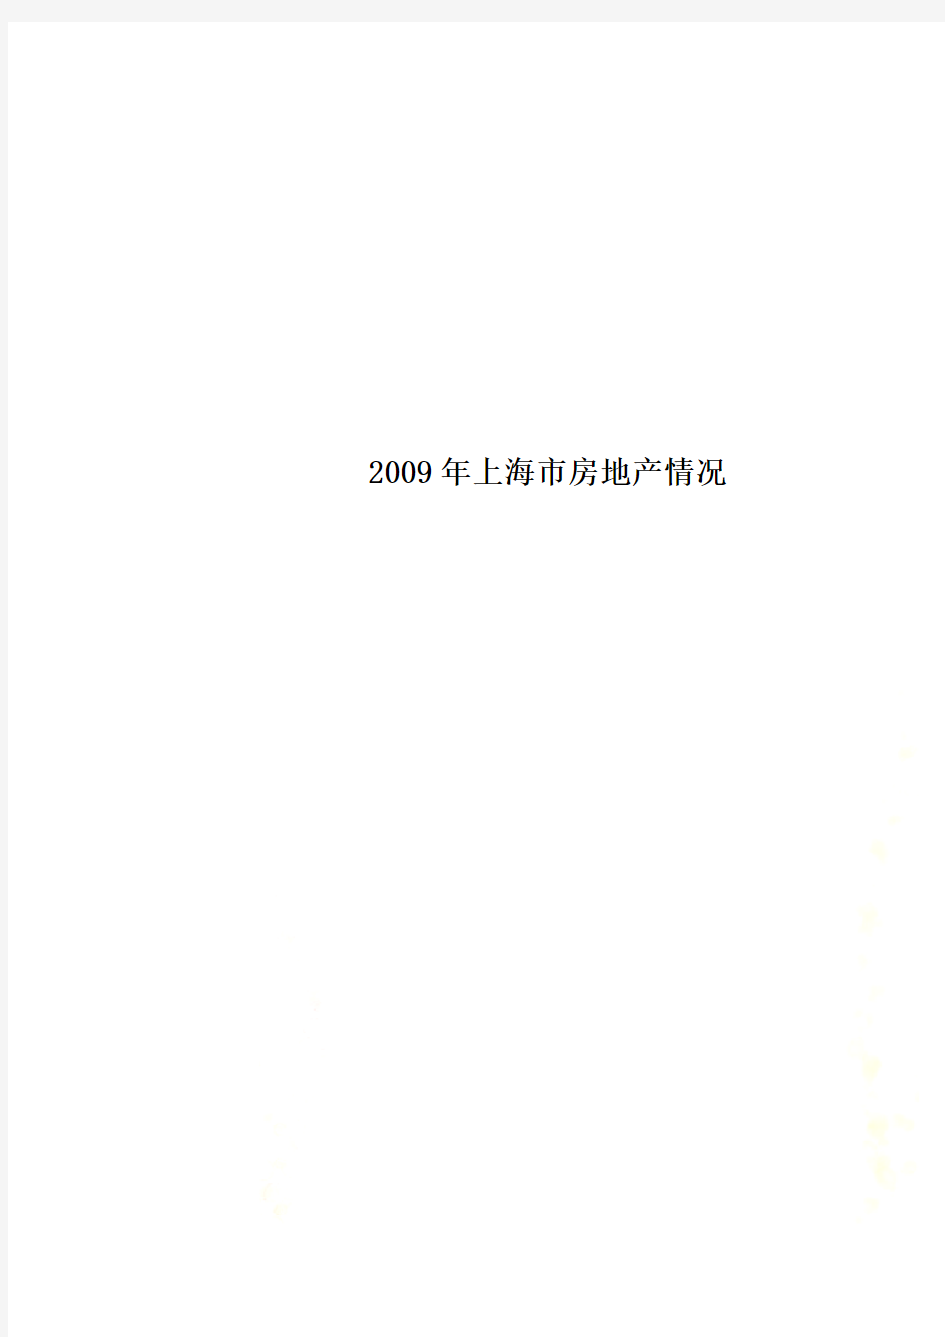 2009年上海市房地产情况